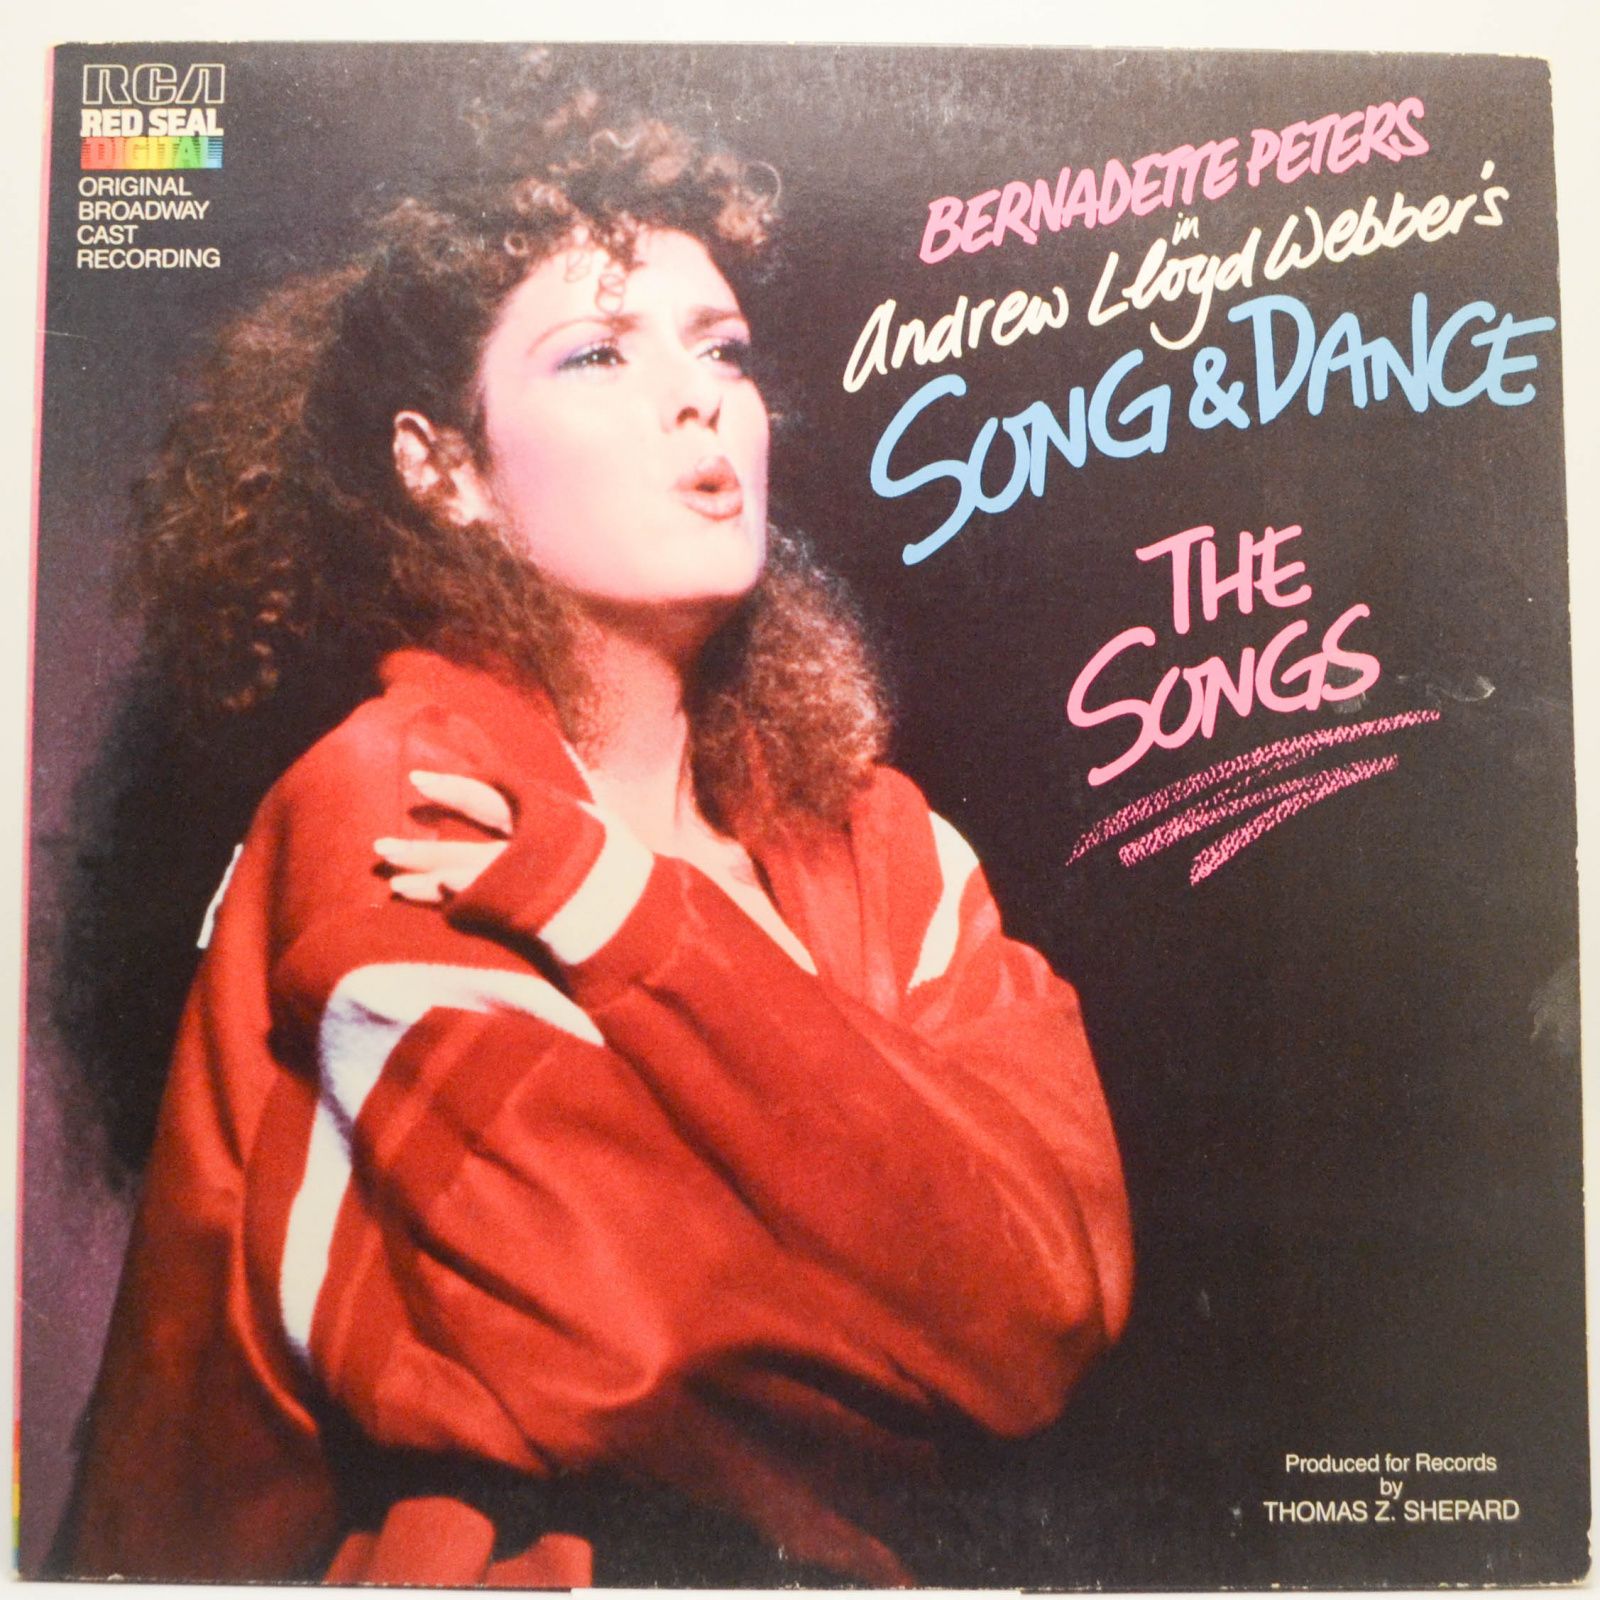 Song & Dance, 1985